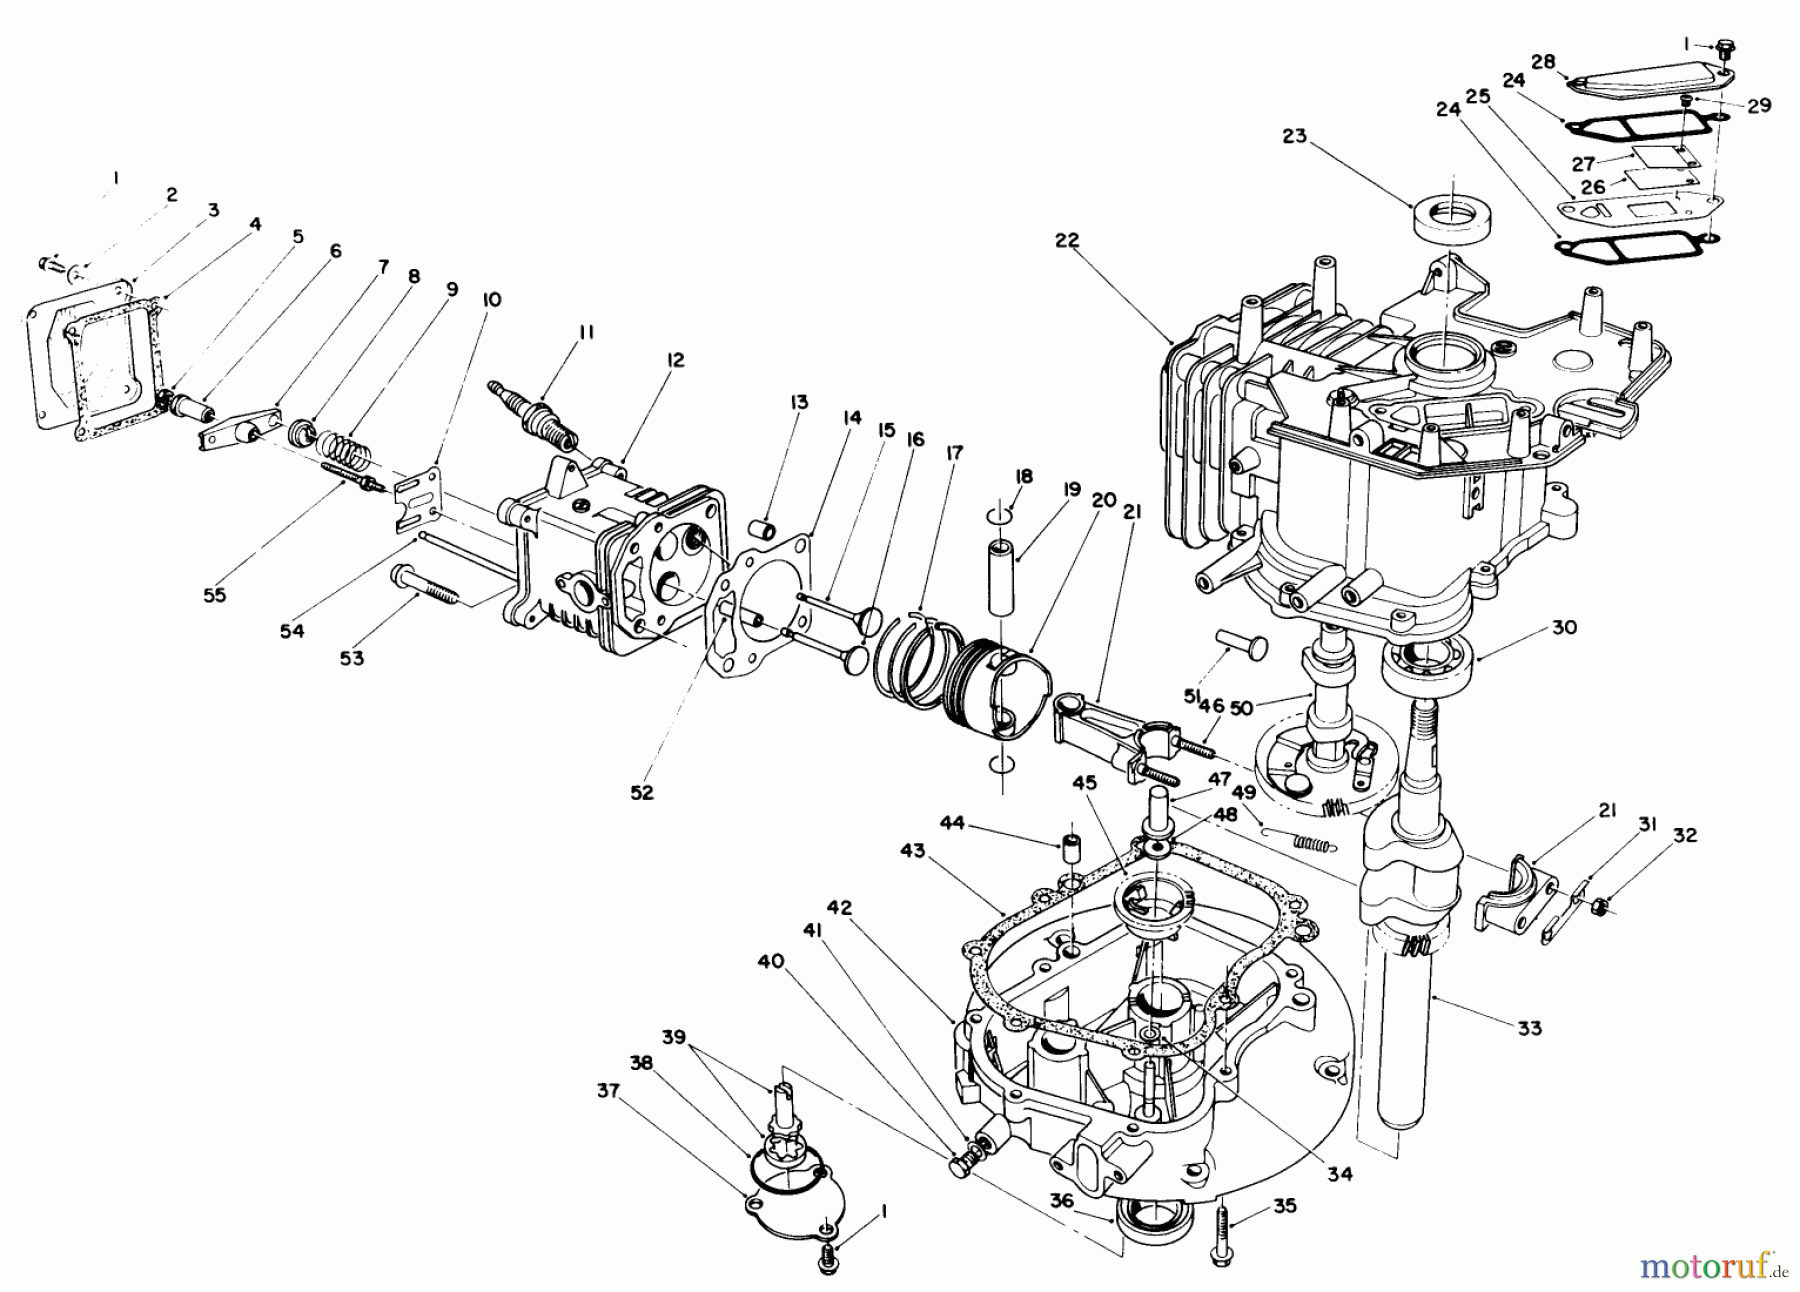  Toro Neu Mowers, Walk-Behind Seite 1 20526C - Toro Lawnmower, 1987 (7000001-7999999) ENGINE ASSEMBLY (MODEL NO. VMG6) #2